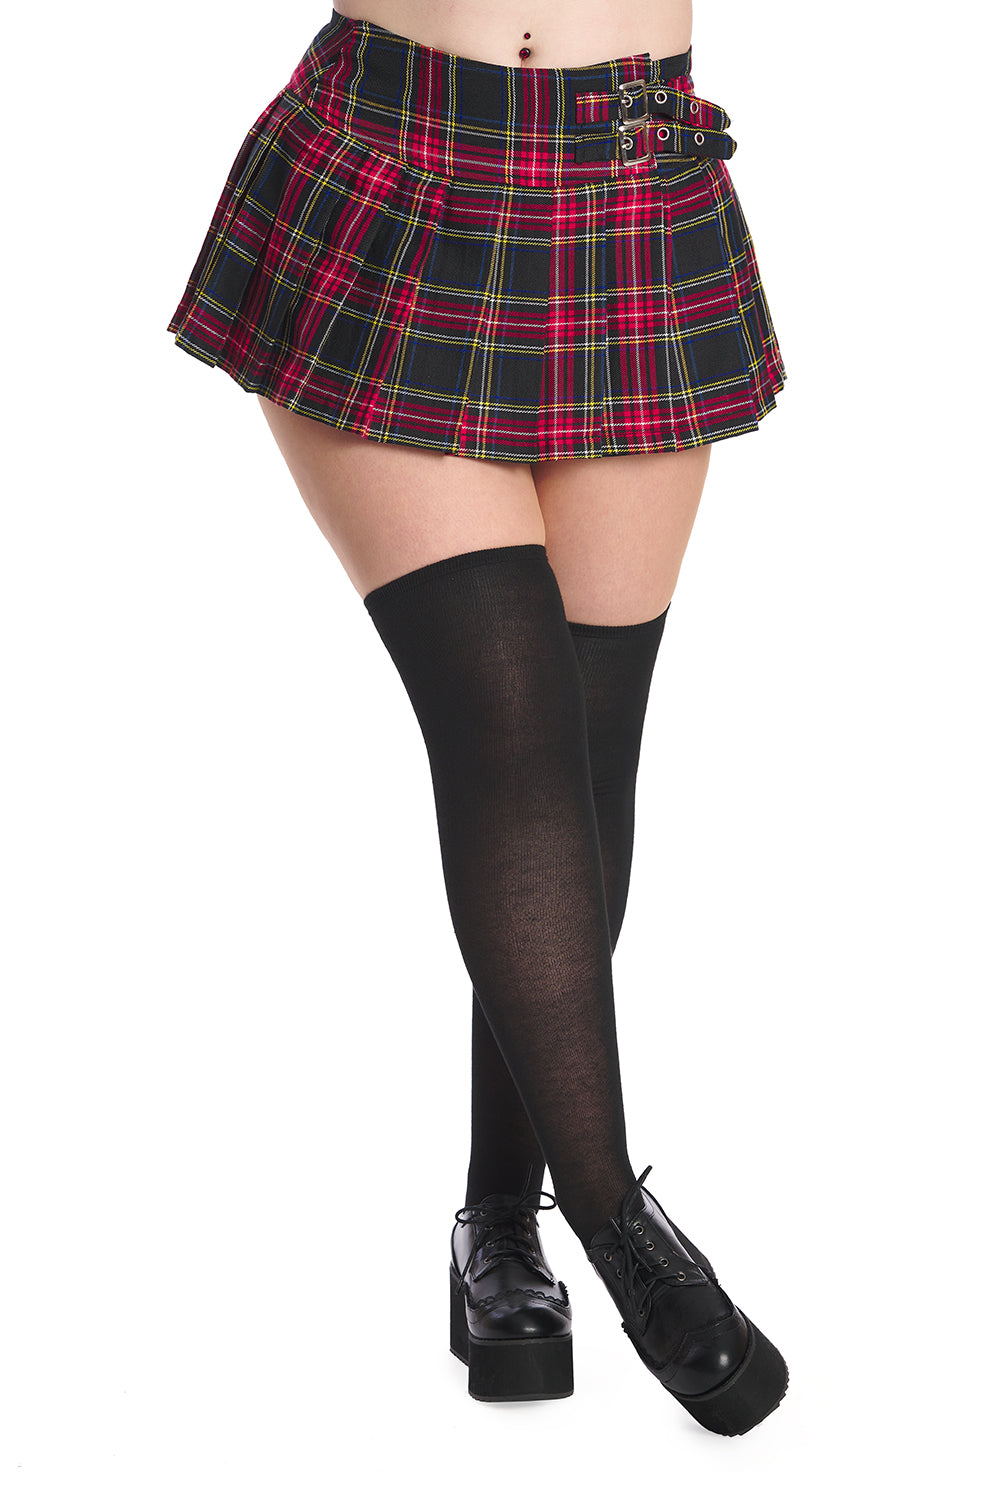 Banned Apparel Darkdoll Mini Skirt | Black Tartan